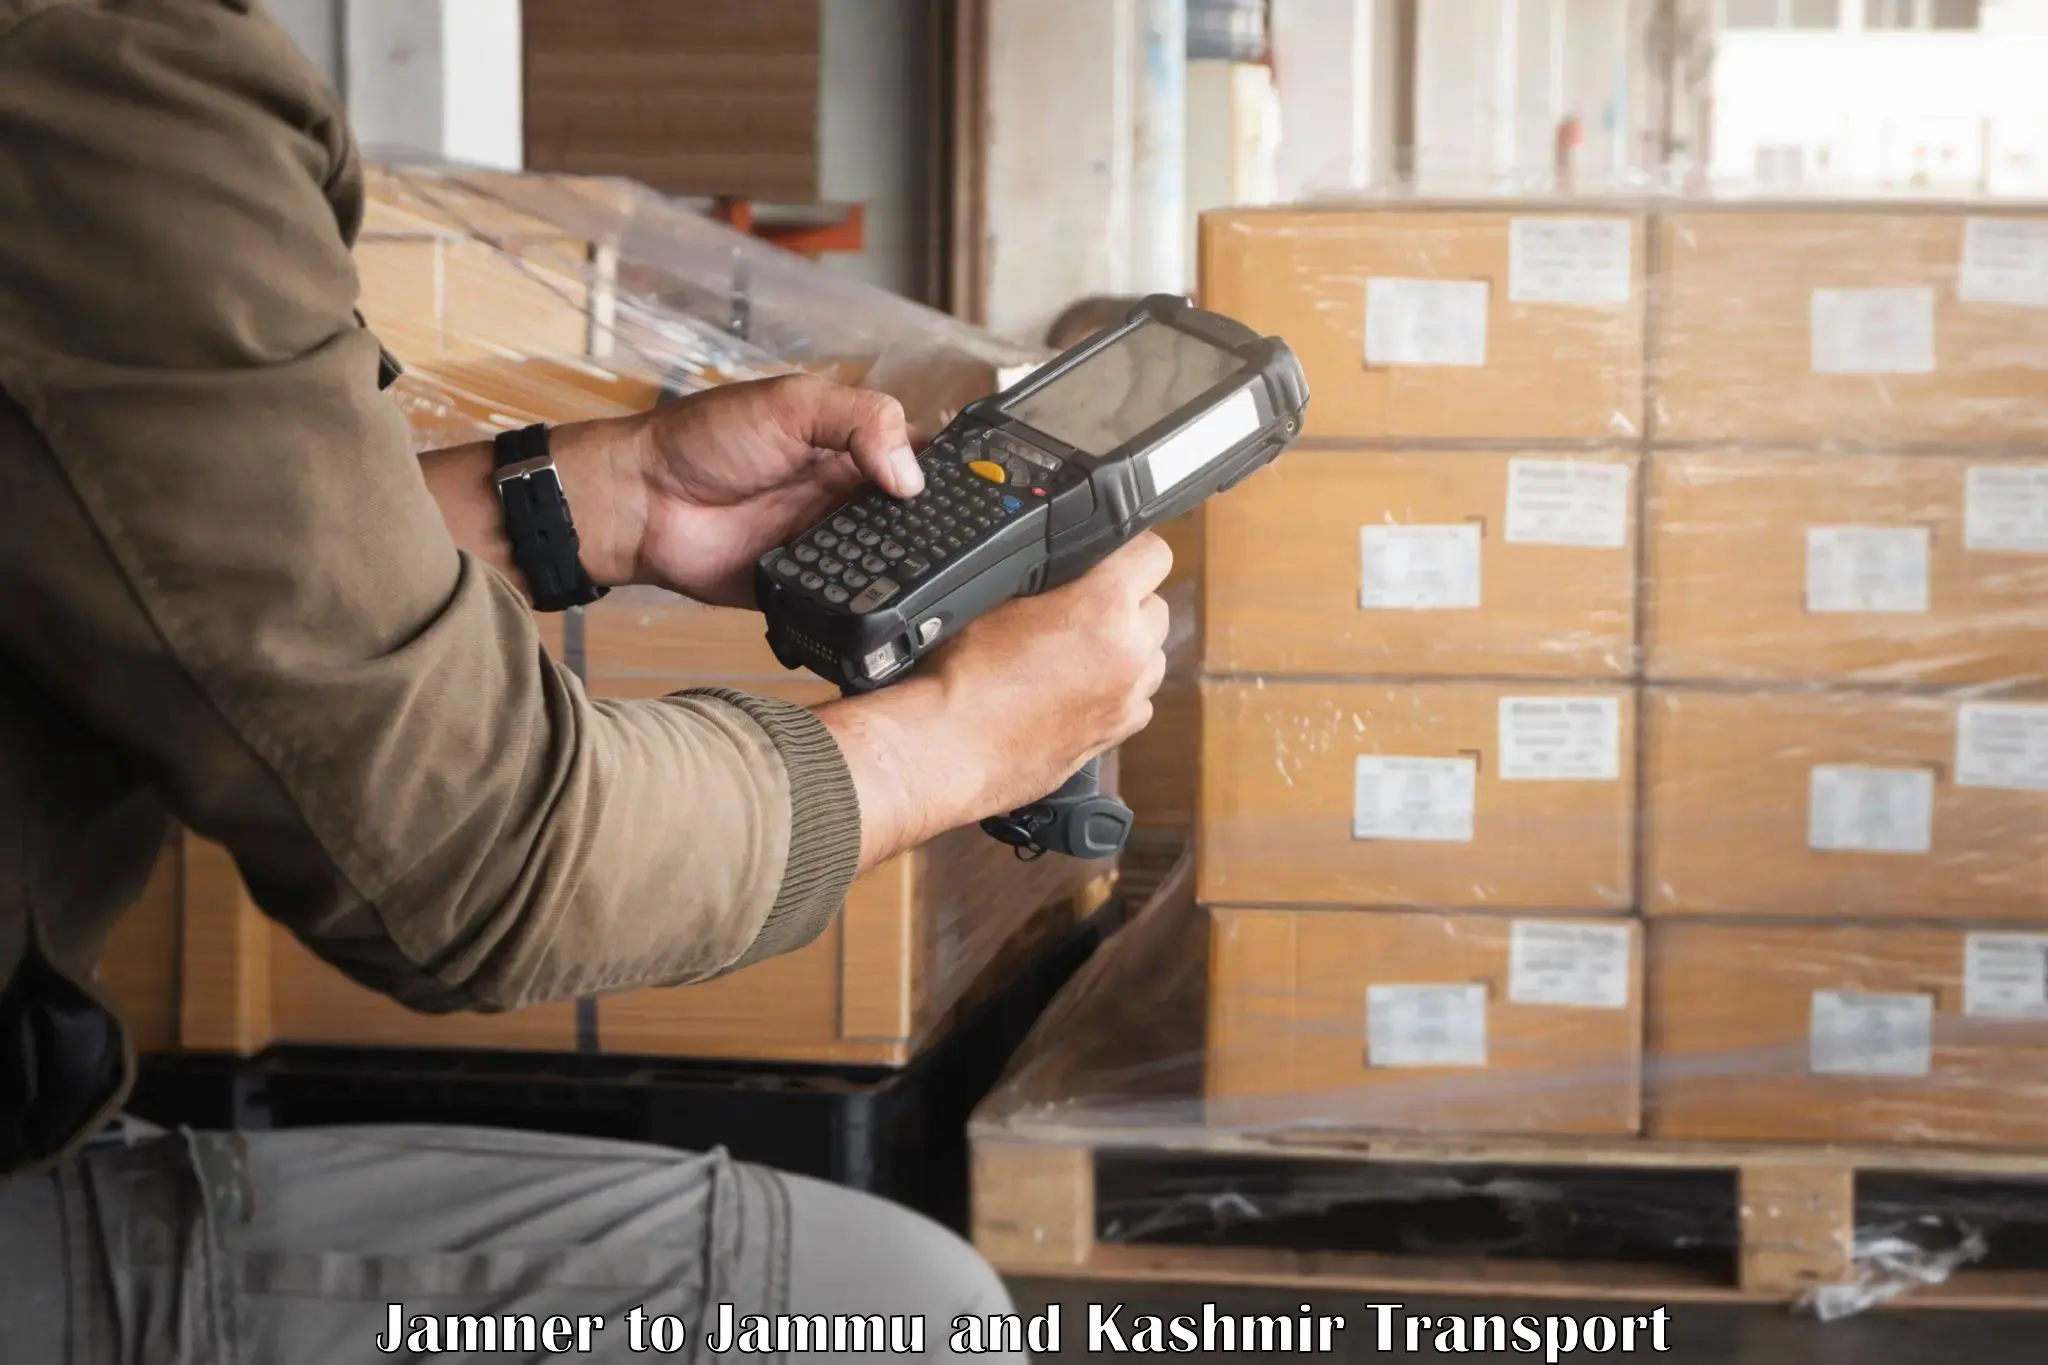 Package delivery services Jamner to Kargil